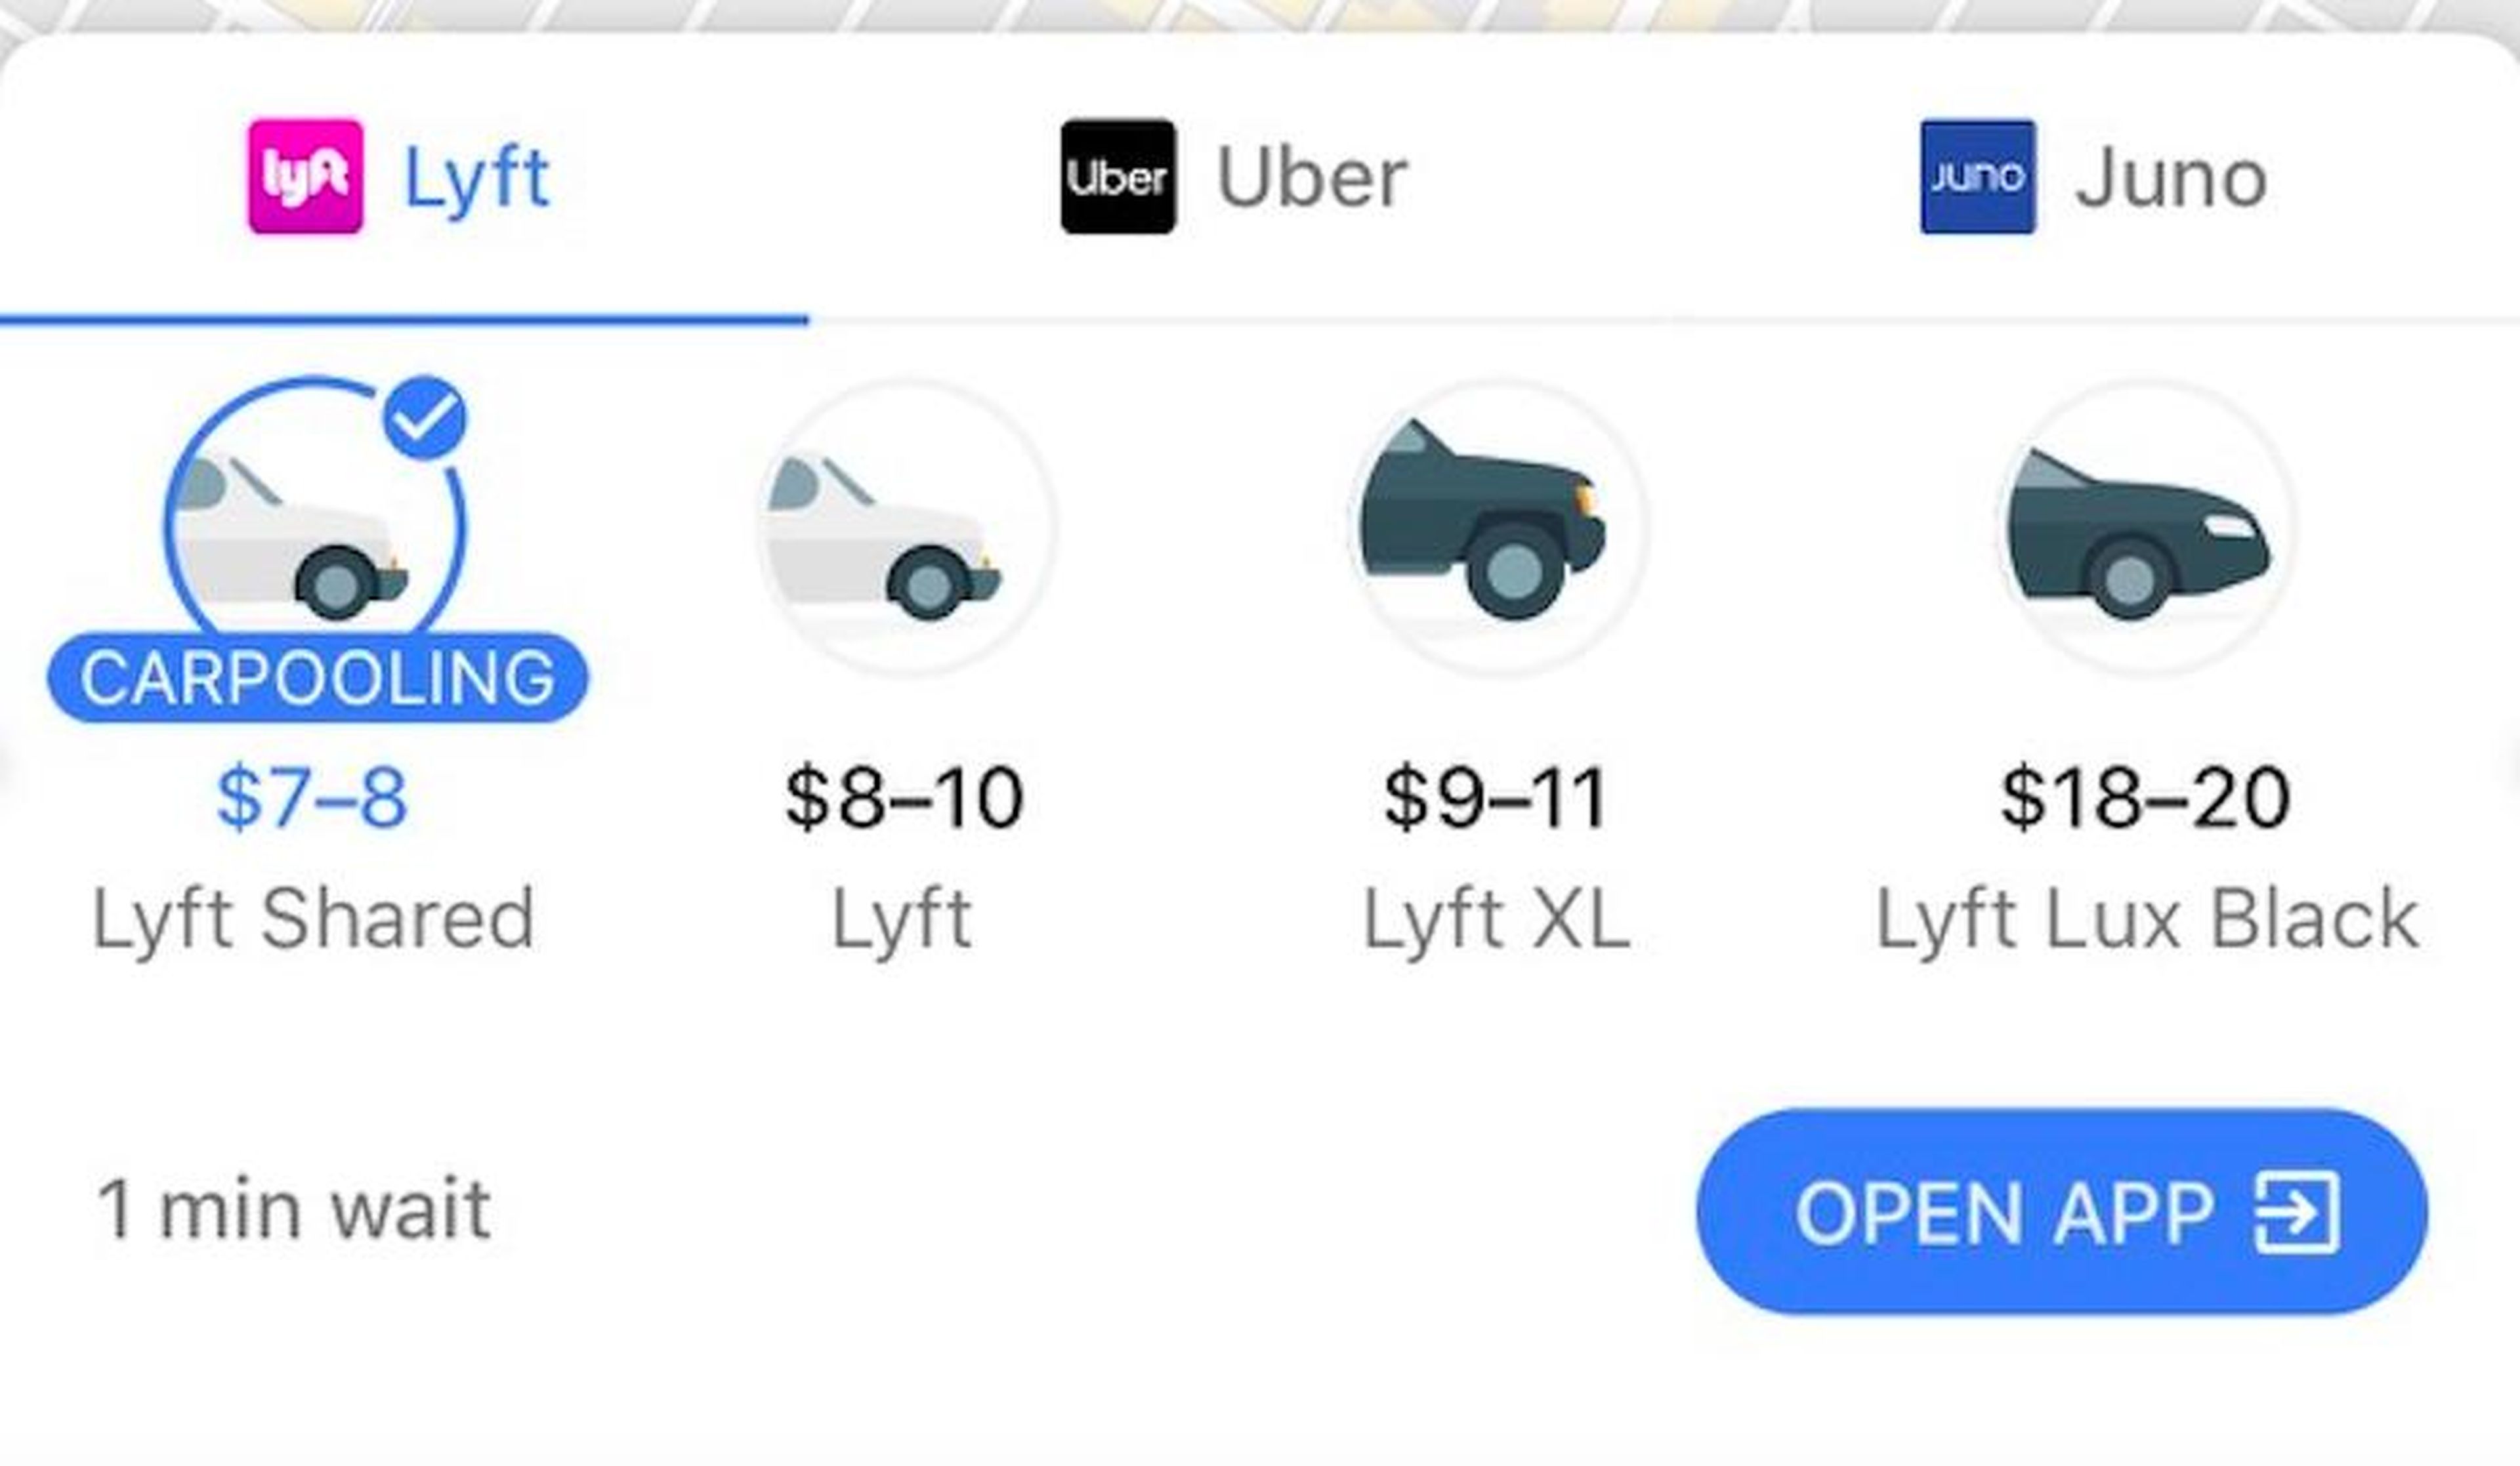 Book an Uber or Lyft ride.